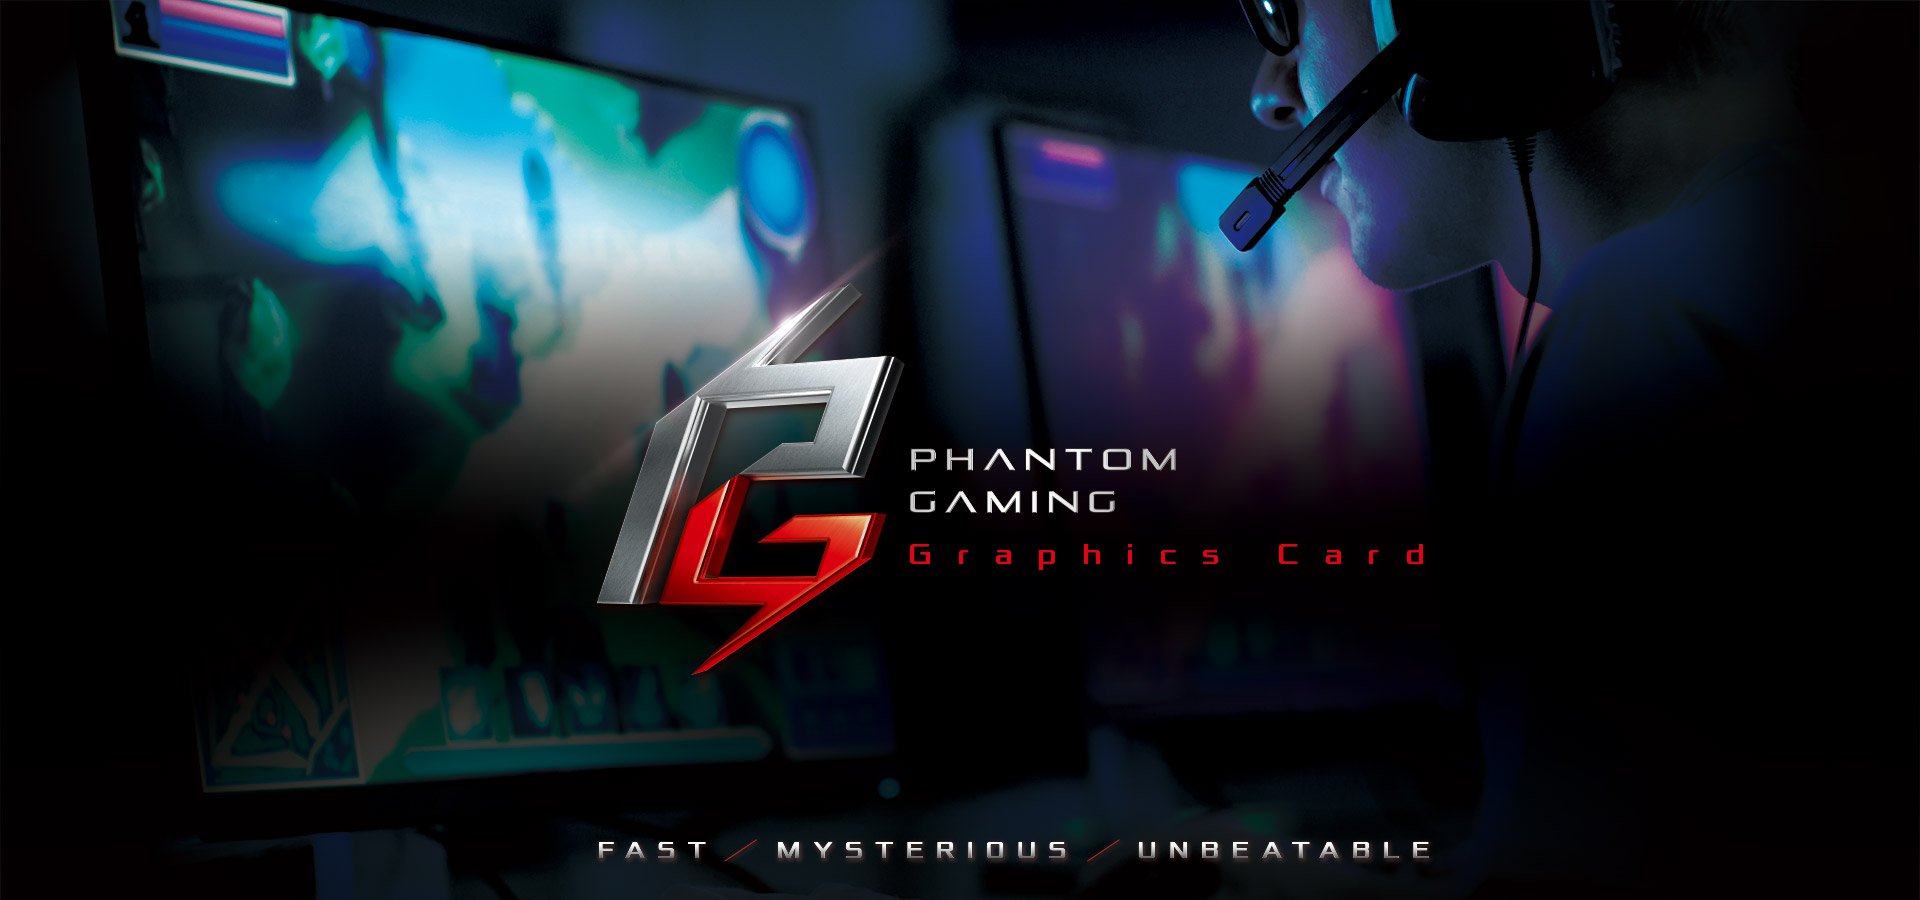 Asrock Phantom Gaming D Radeon Rx580 8g Oc